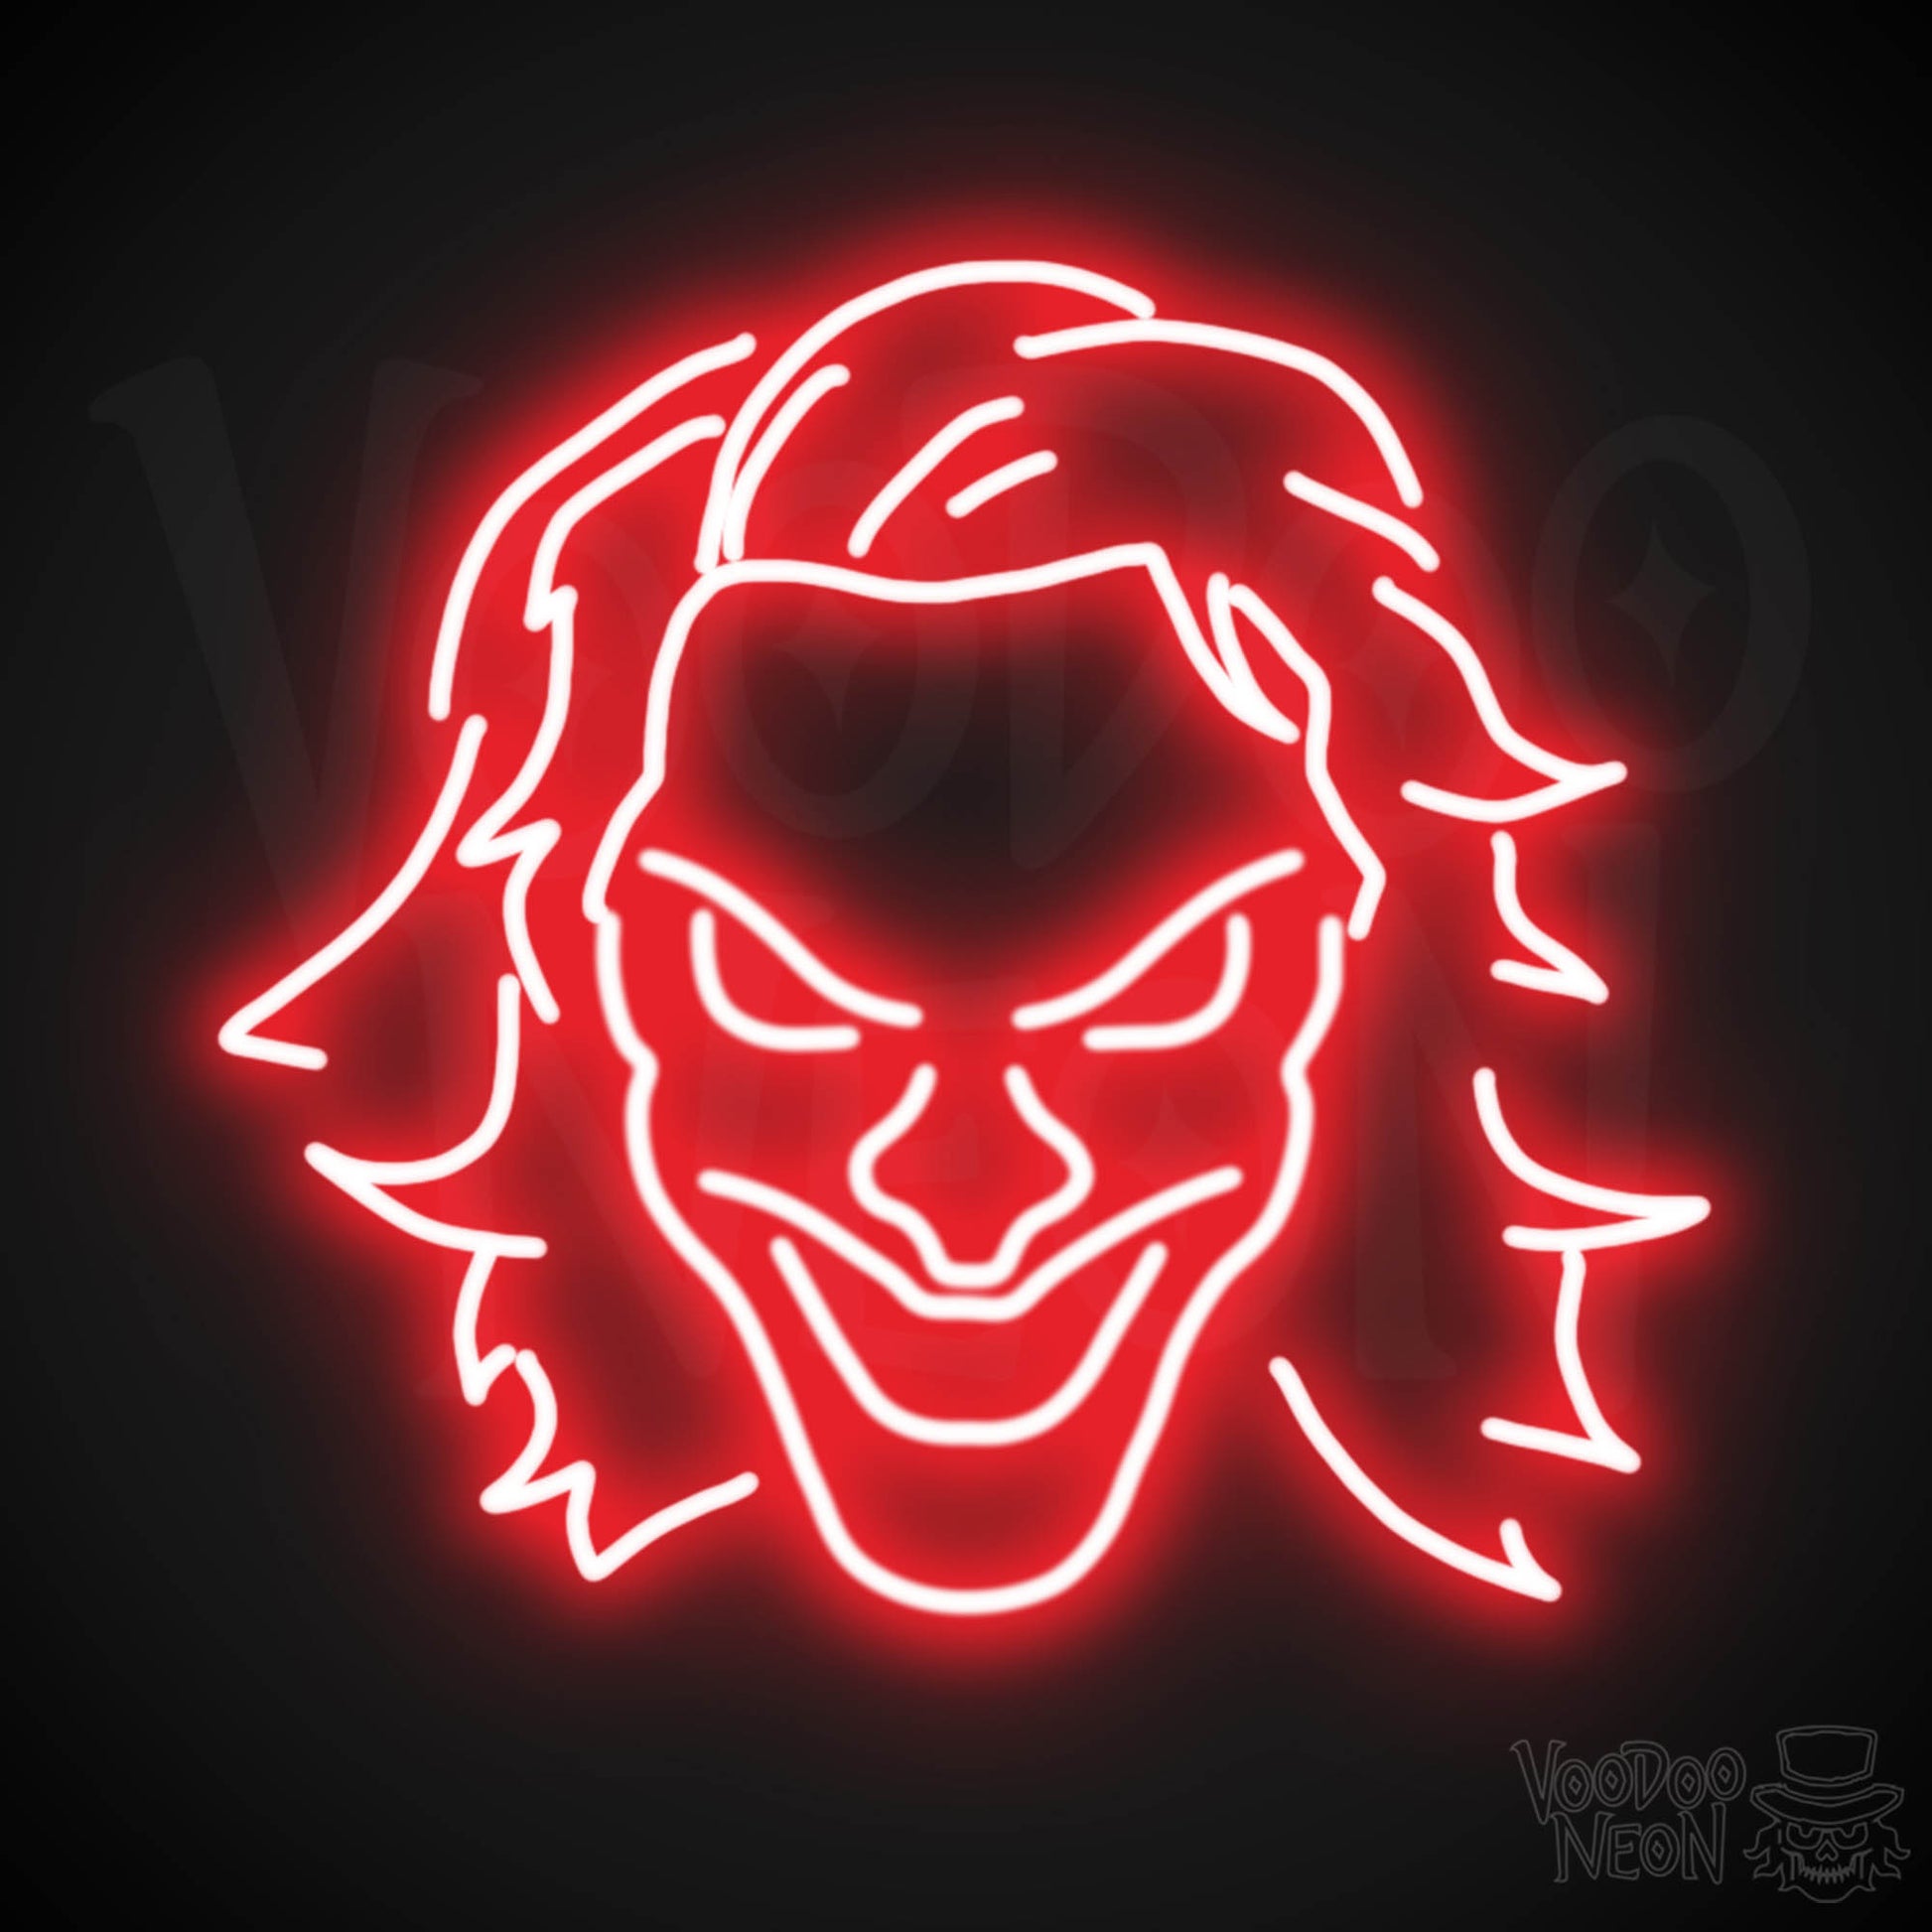 Joker Neon Sign - Neon Joker Sign - Joker LED Wall Art - Color Red